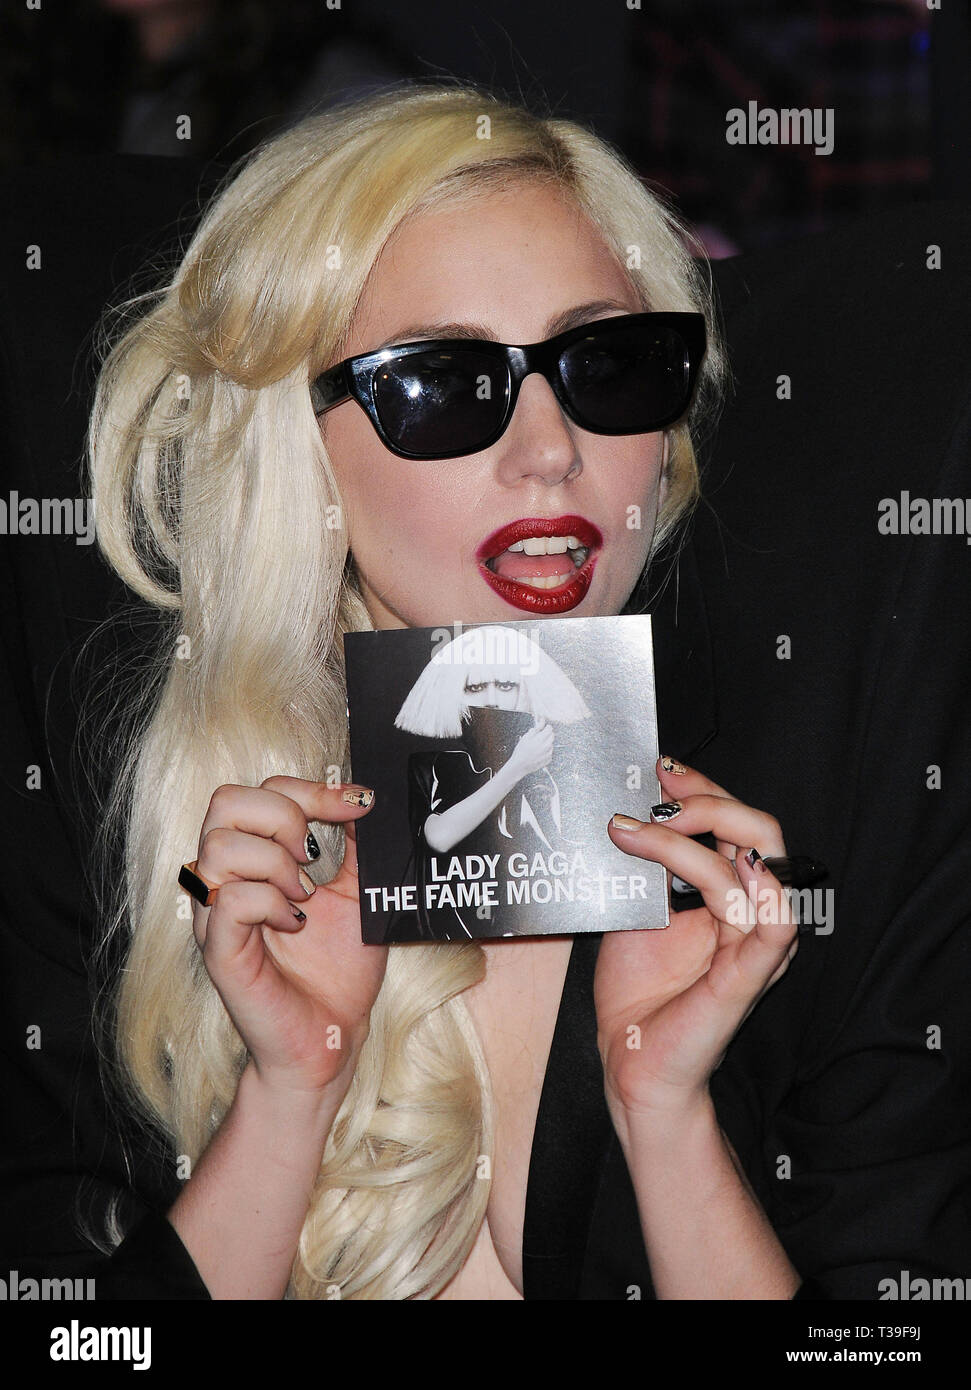 LADY GAGA - la promozione di un nuovo CD per la fama di Monster a Los  Angeles.Lady Gaga 01 Red Carpet Event, verticale, STATI UNITI D'AMERICA,  industria cinematografica, celebrità, fotografia, Bestof, arte